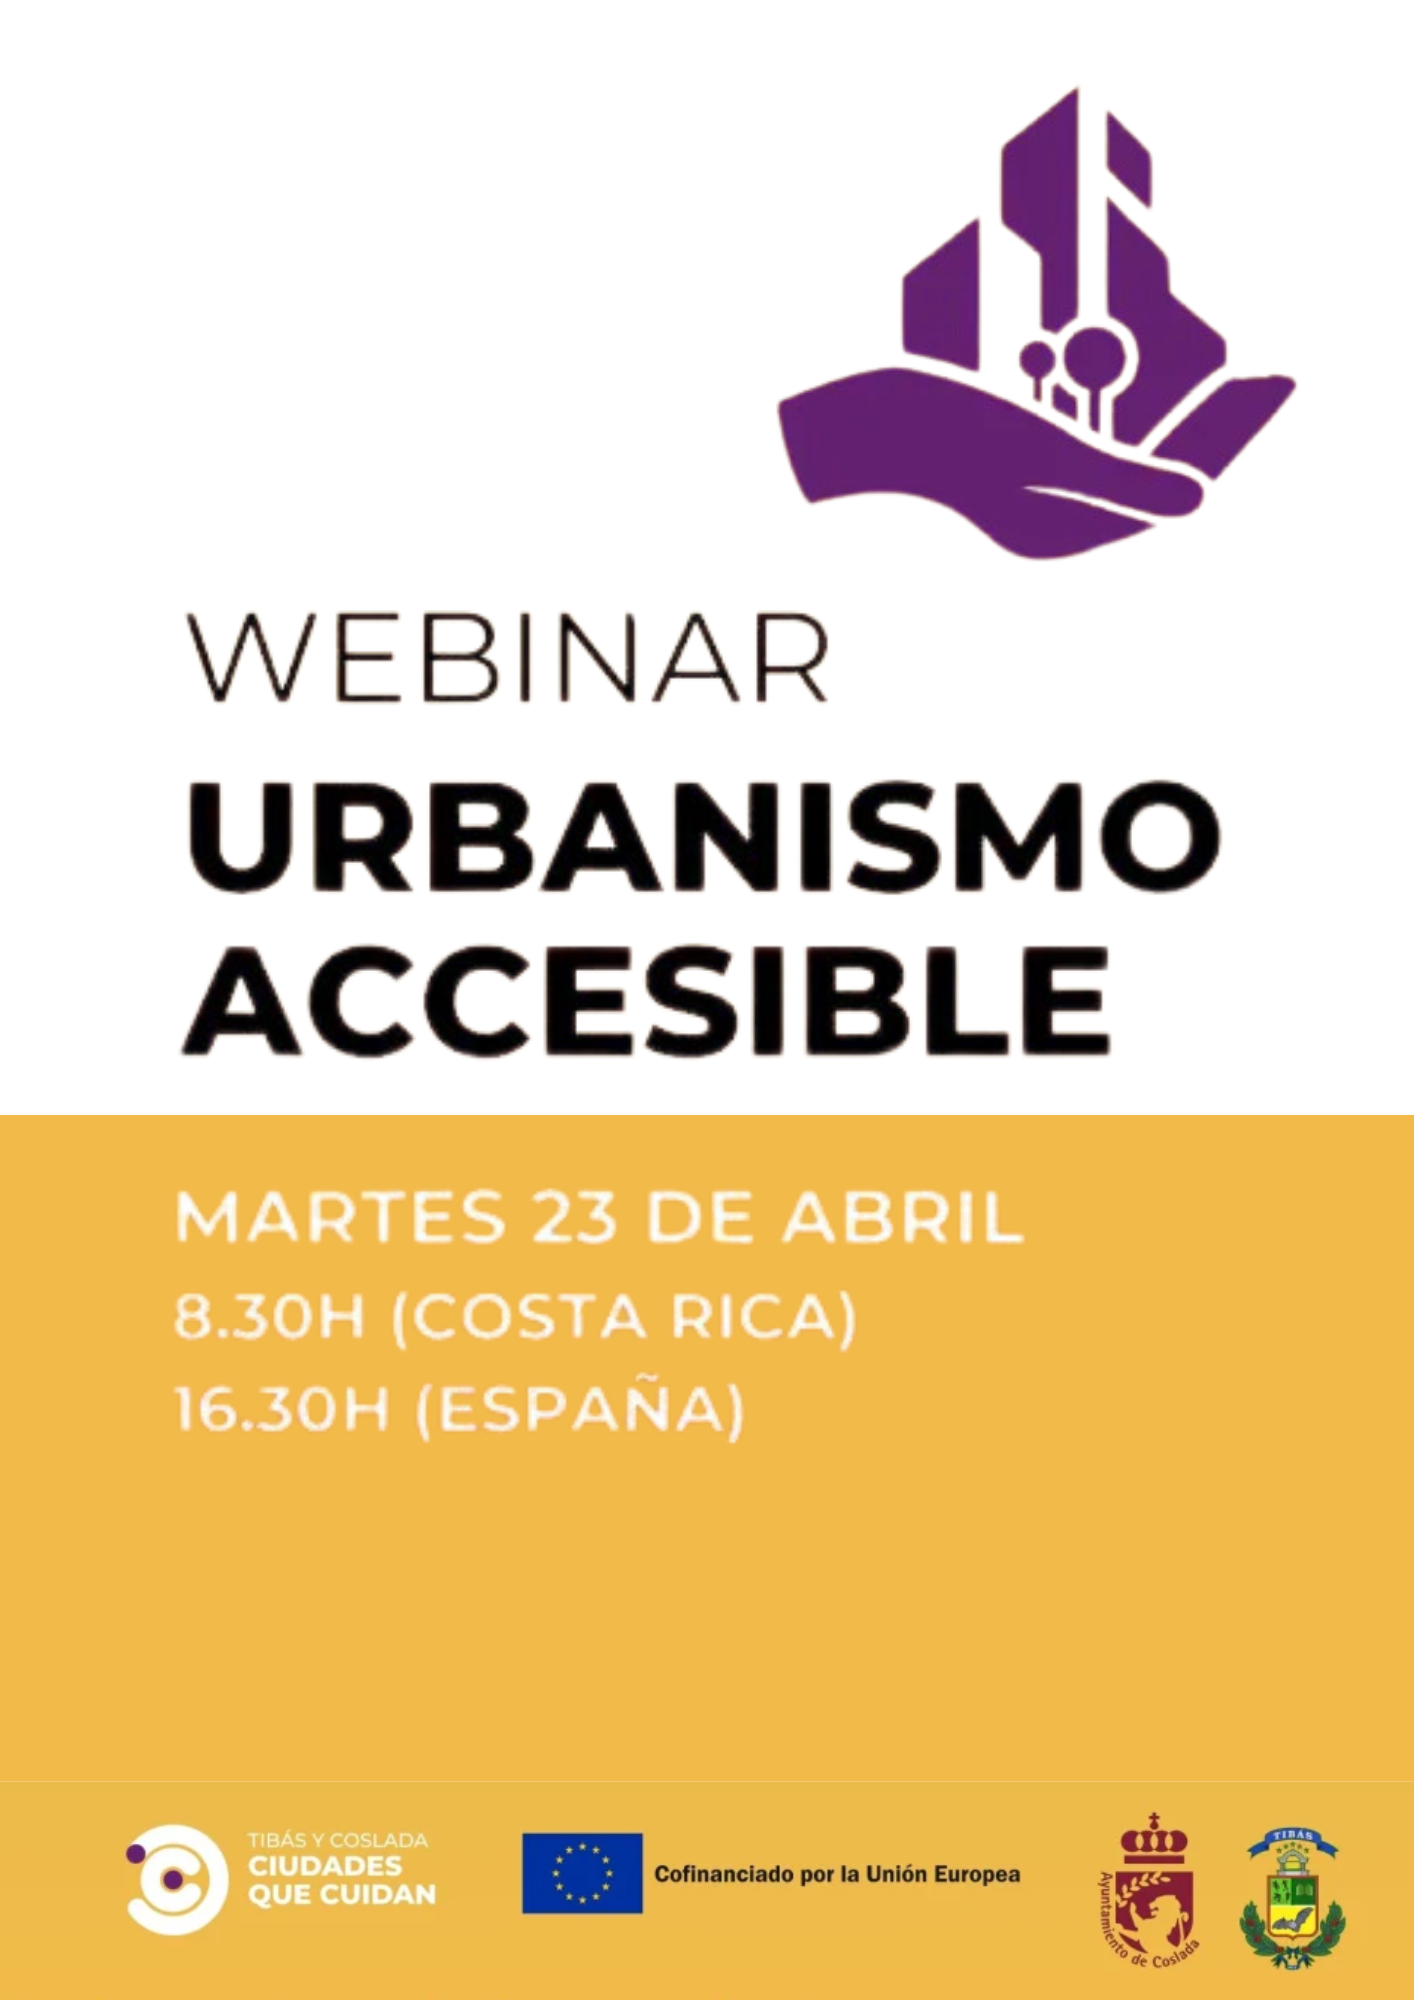 Imagen anunciadora de la webinar "Urbanismo Accesible"